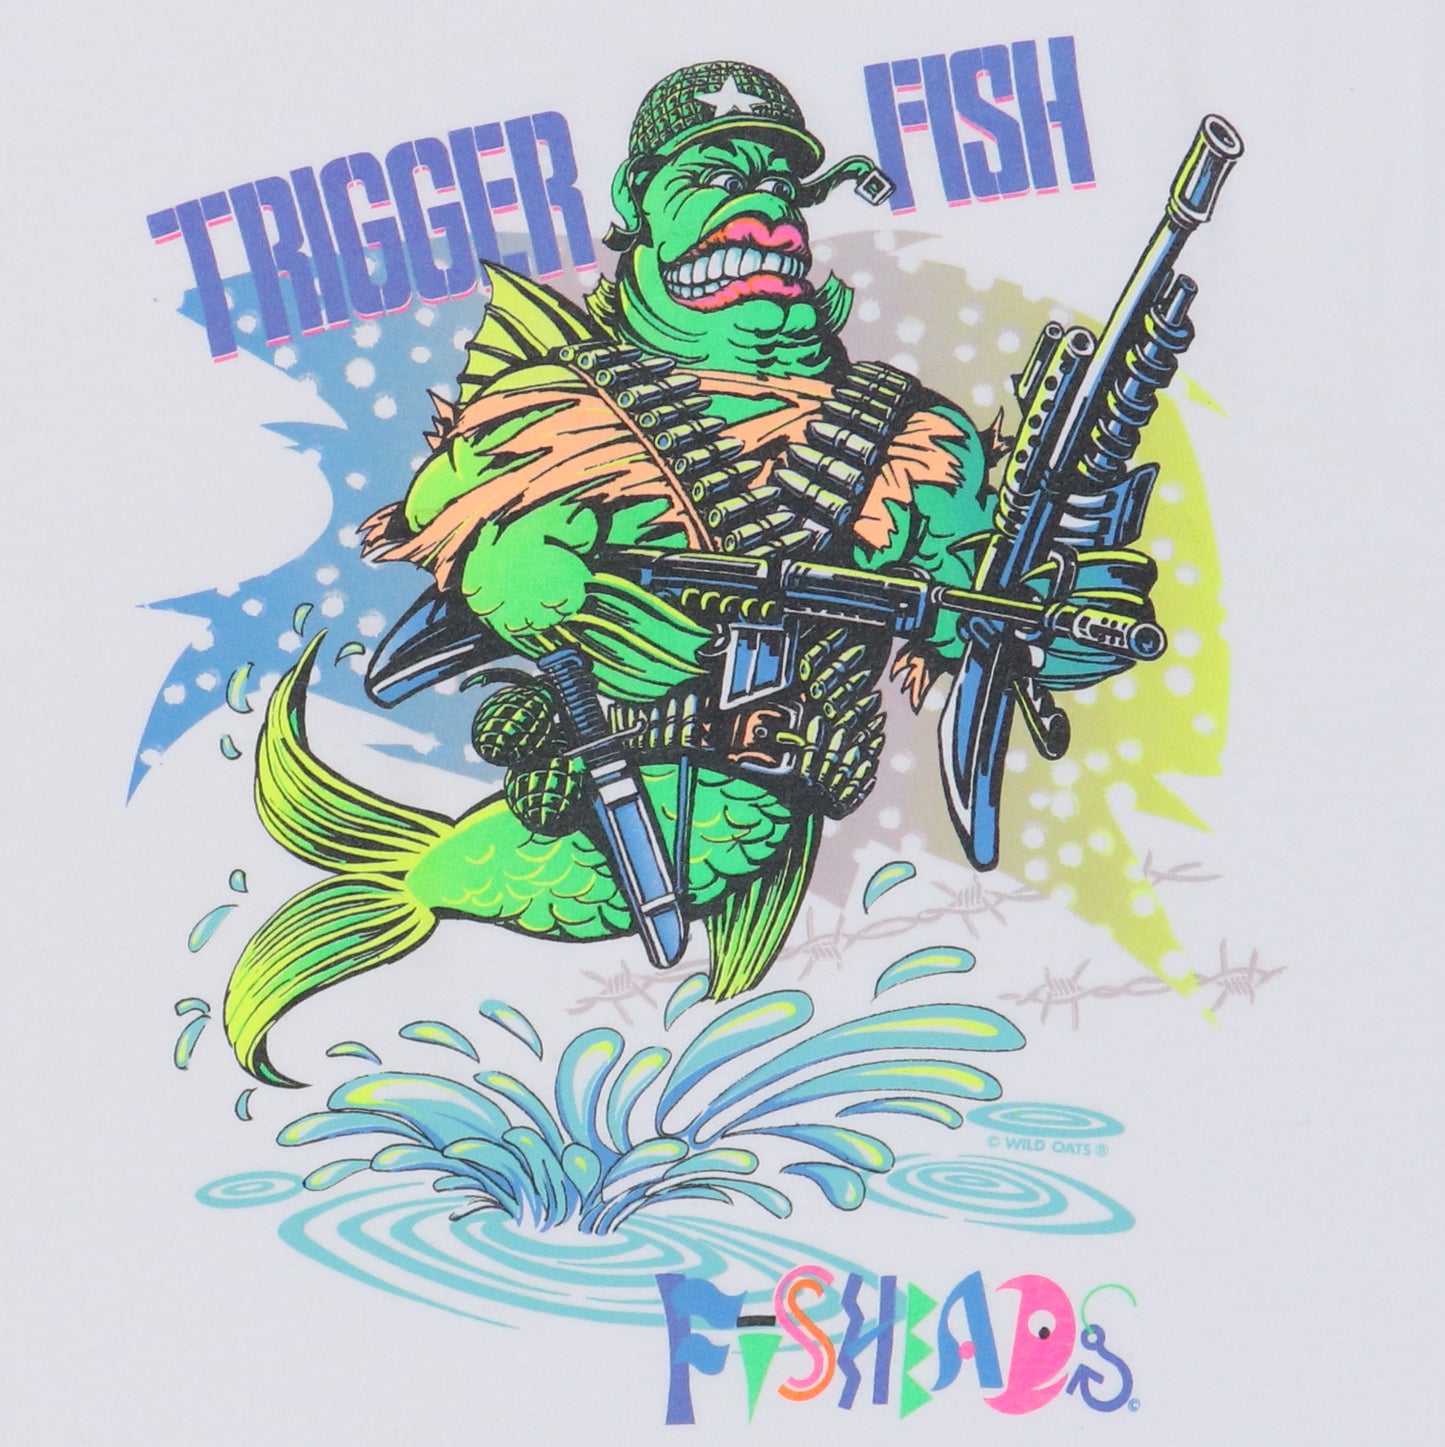 1990s Fishheads Trigger Fish Shirt